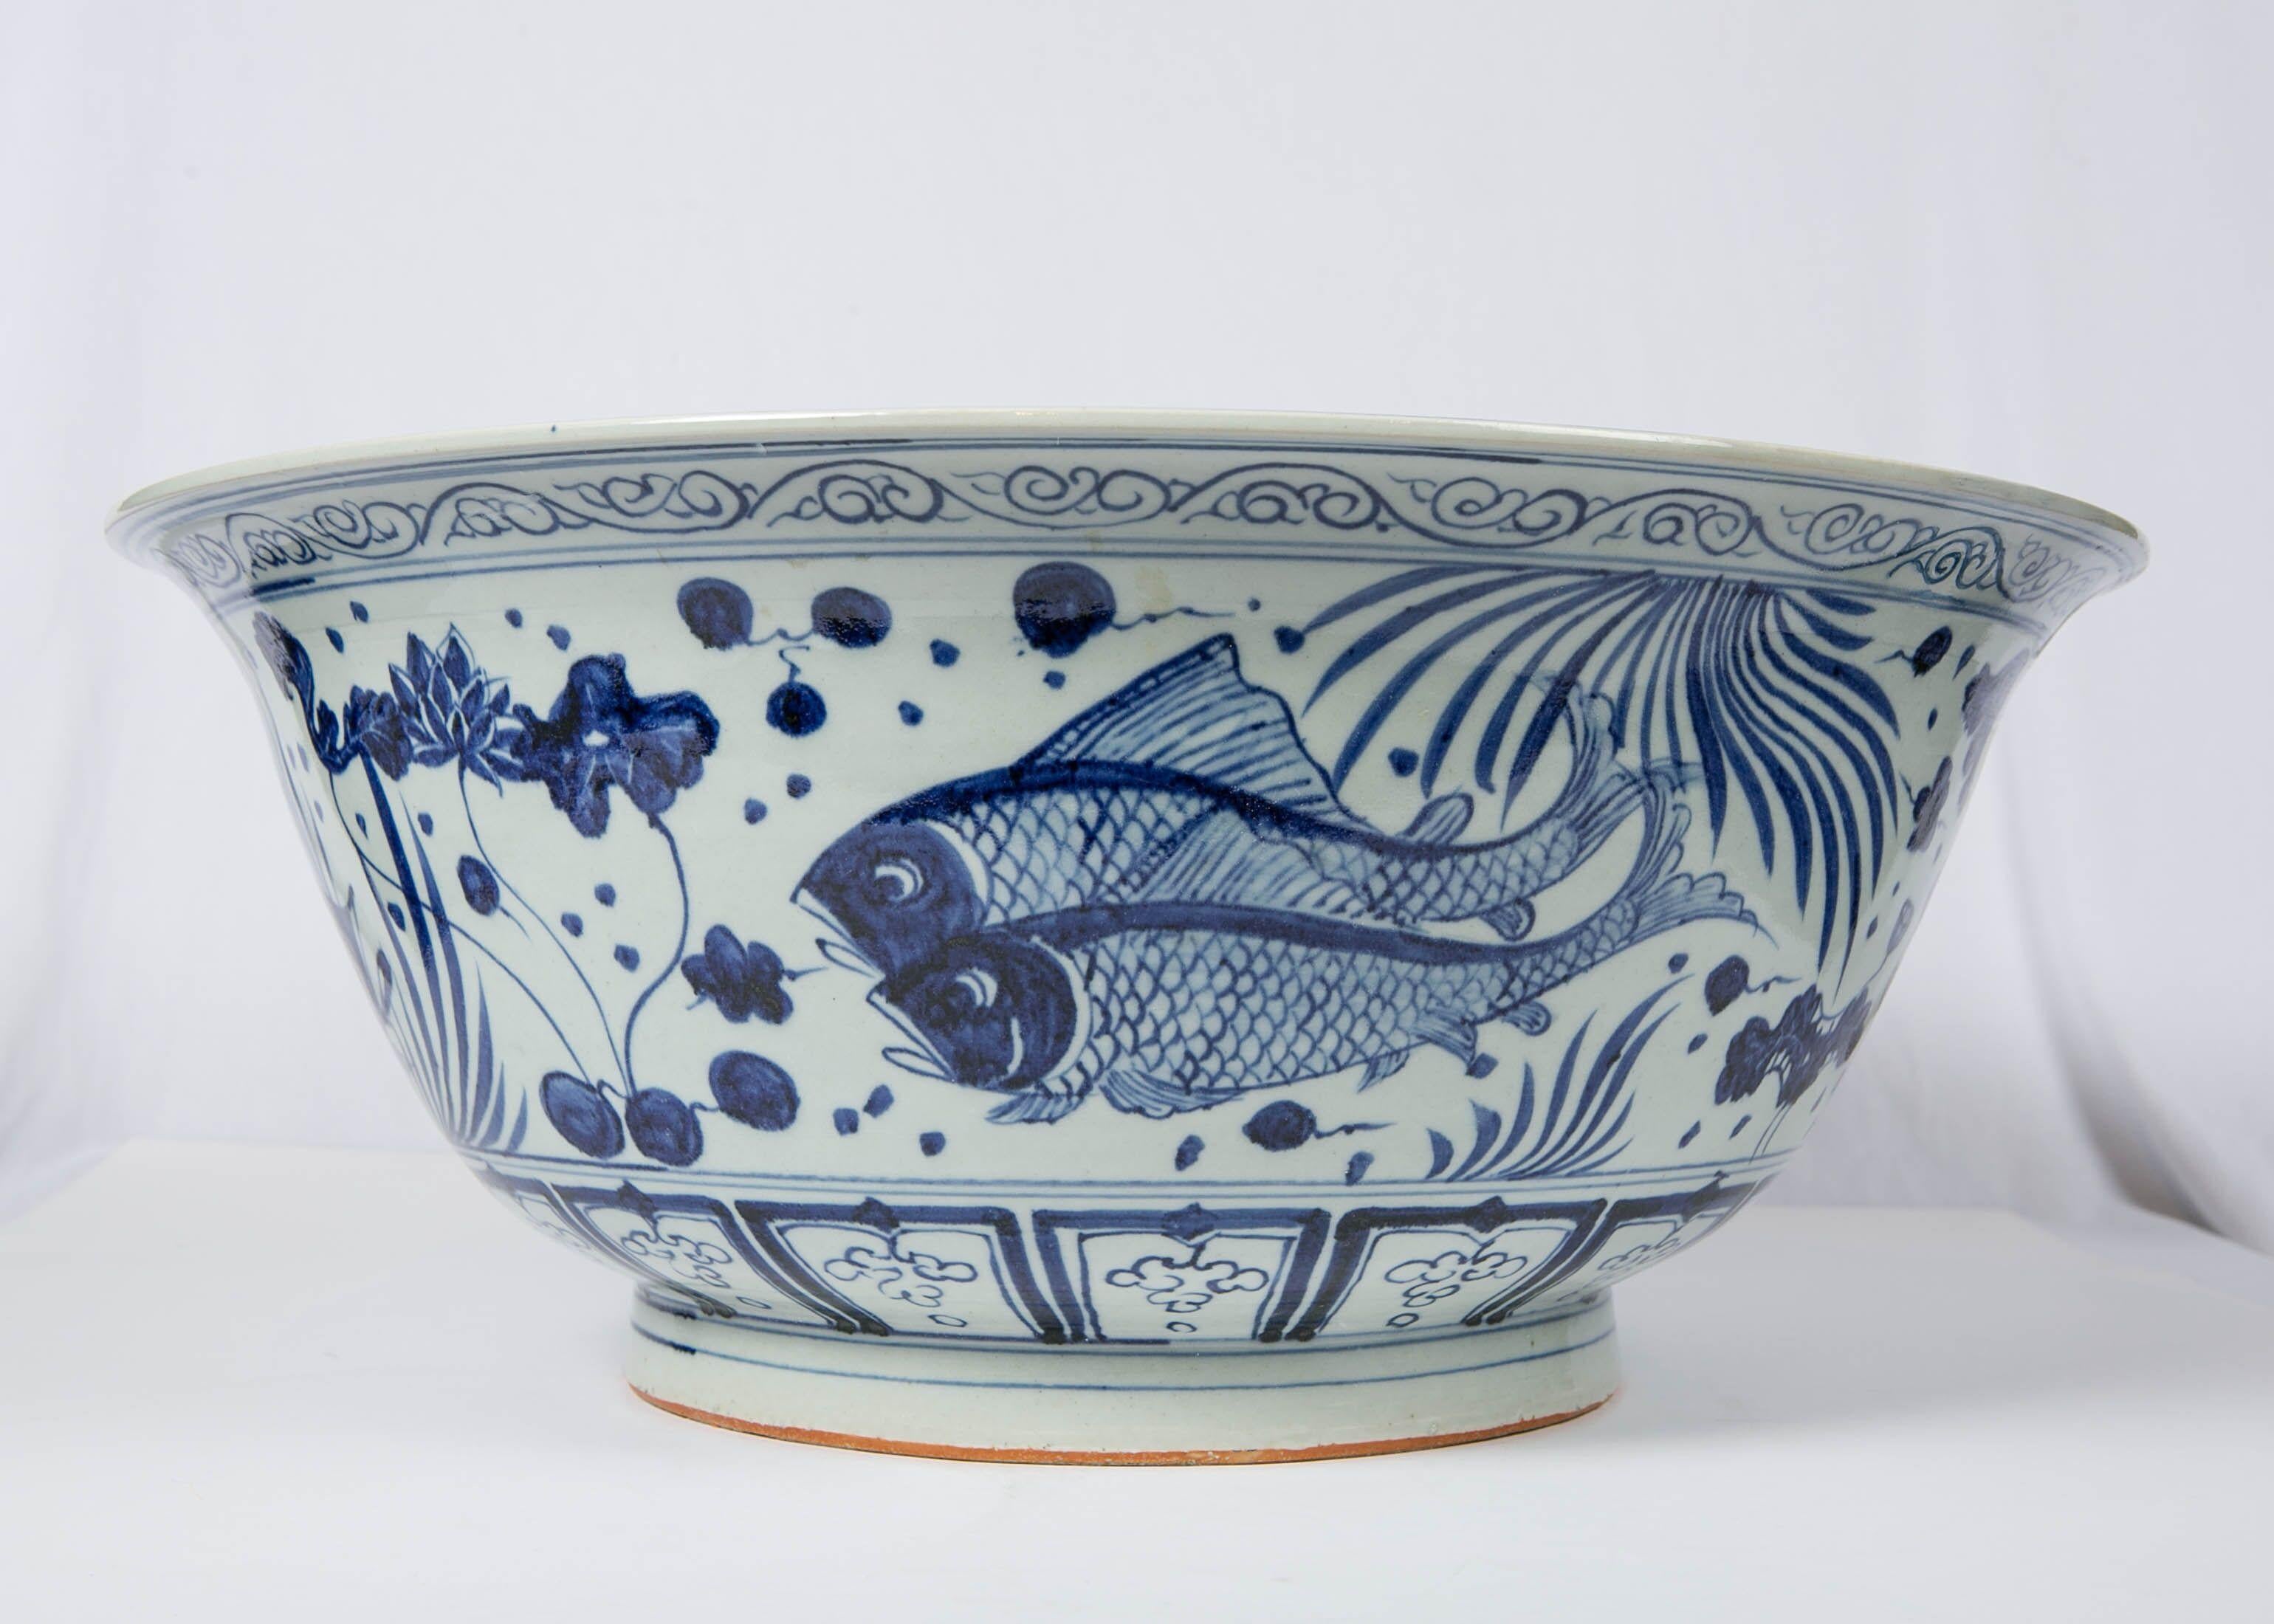 Wir freuen uns:: diese massive:: handbemalte chinesische blau-weiße Punschschale mit dem beliebten Fisch- und Wasserpflanzenmotiv anbieten zu können. Dieses Motiv wurde ab der Yuan-Ära (1271-1368) häufig auf blau-weißes Porzellan gemalt. Das Äußere